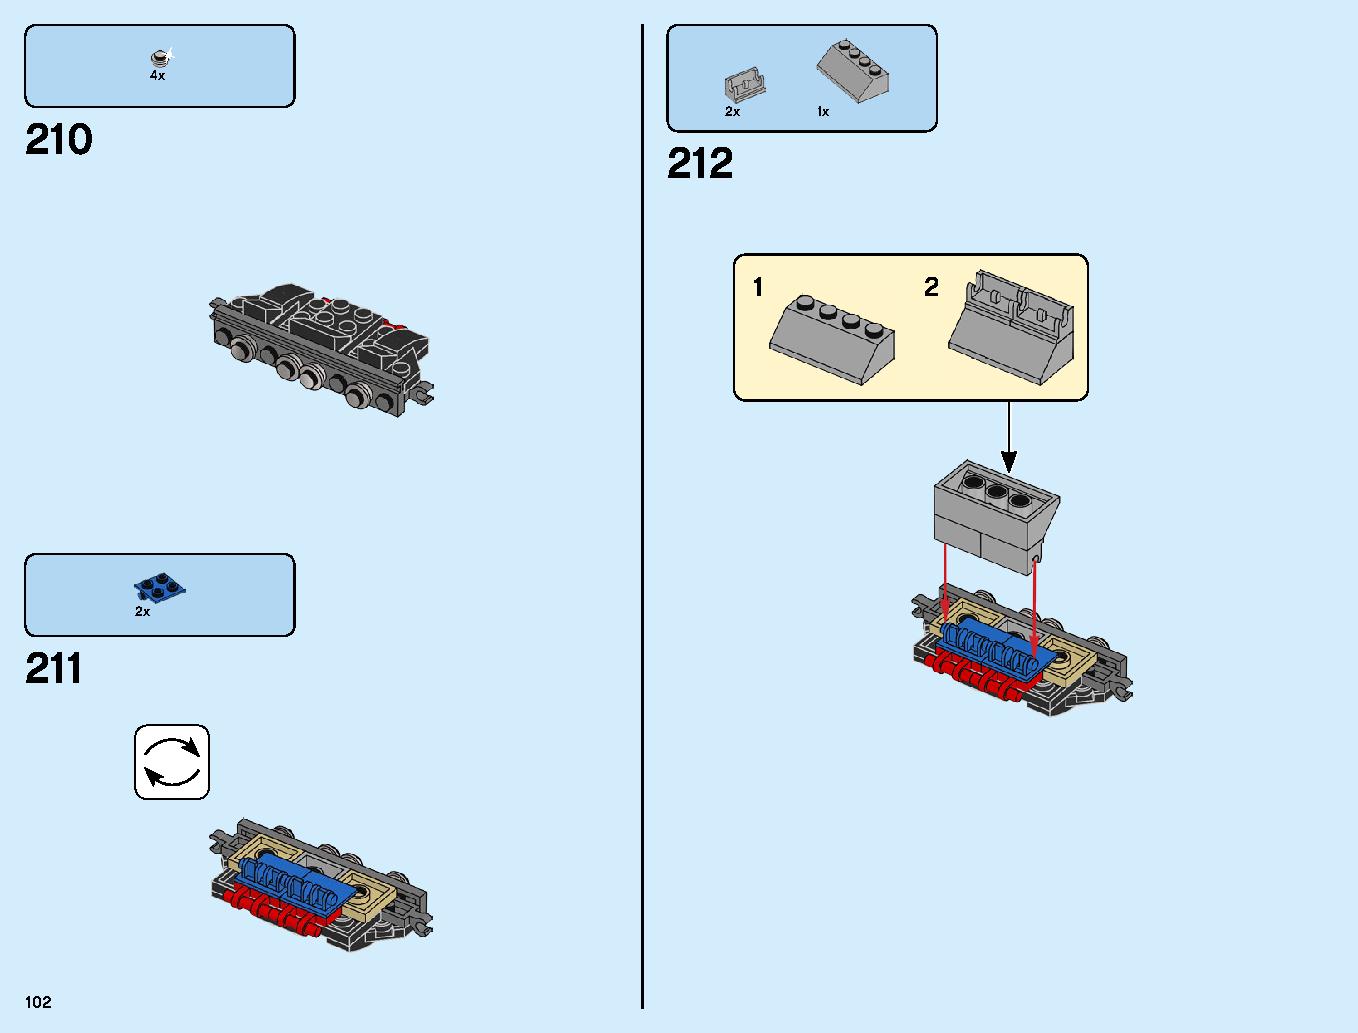 ニンジャ道場 70670 レゴの商品情報 レゴの説明書・組立方法 102 page